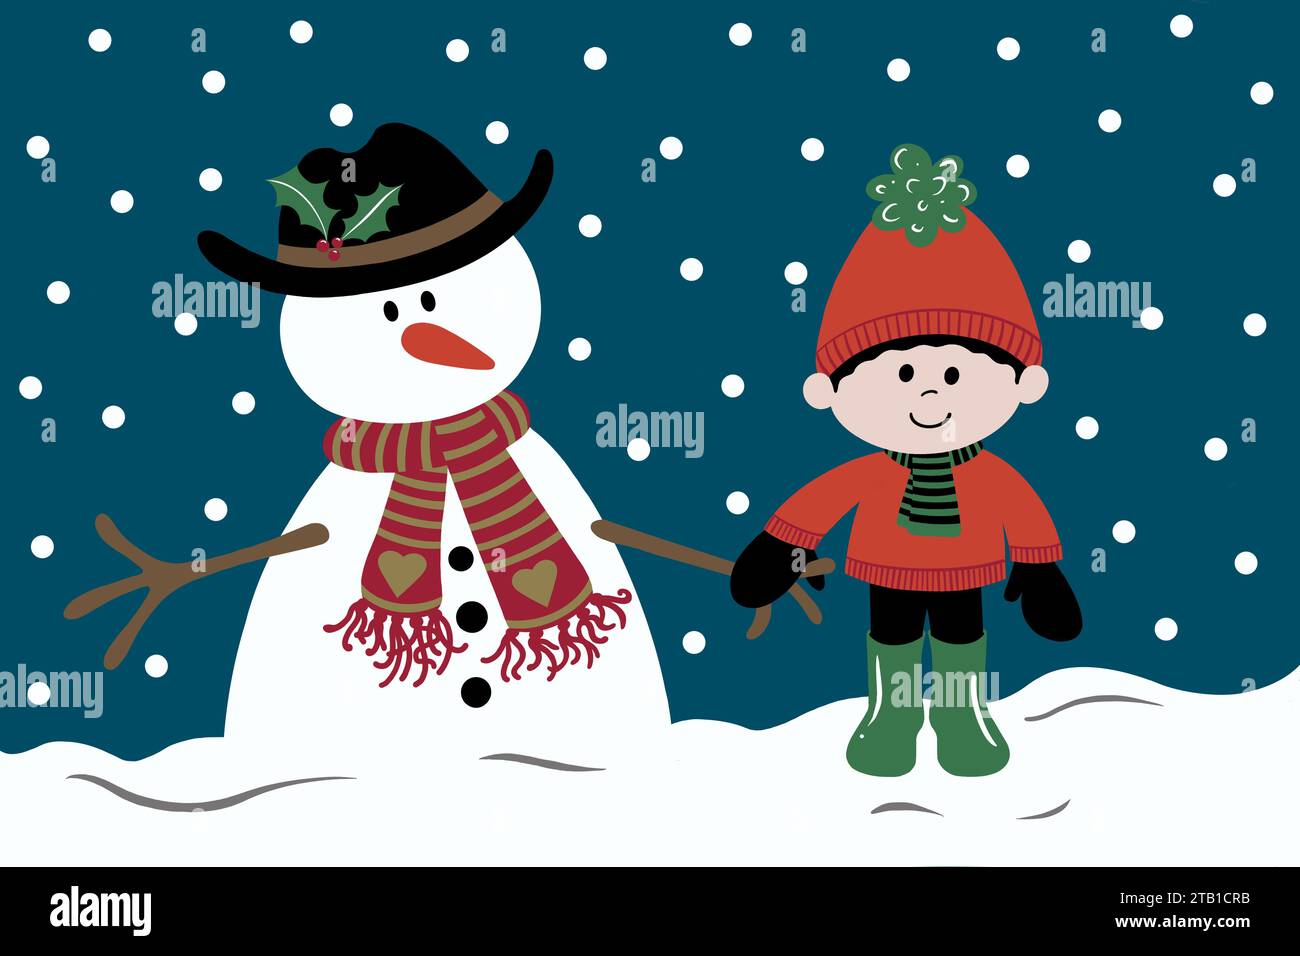 Bonhomme de neige et garçon par une journée froide de neige. Les deux amis se tiennent la main dans la neige en hiver. L'enfant est enveloppé dans un pull confortable et chapeau de boule. Banque D'Images